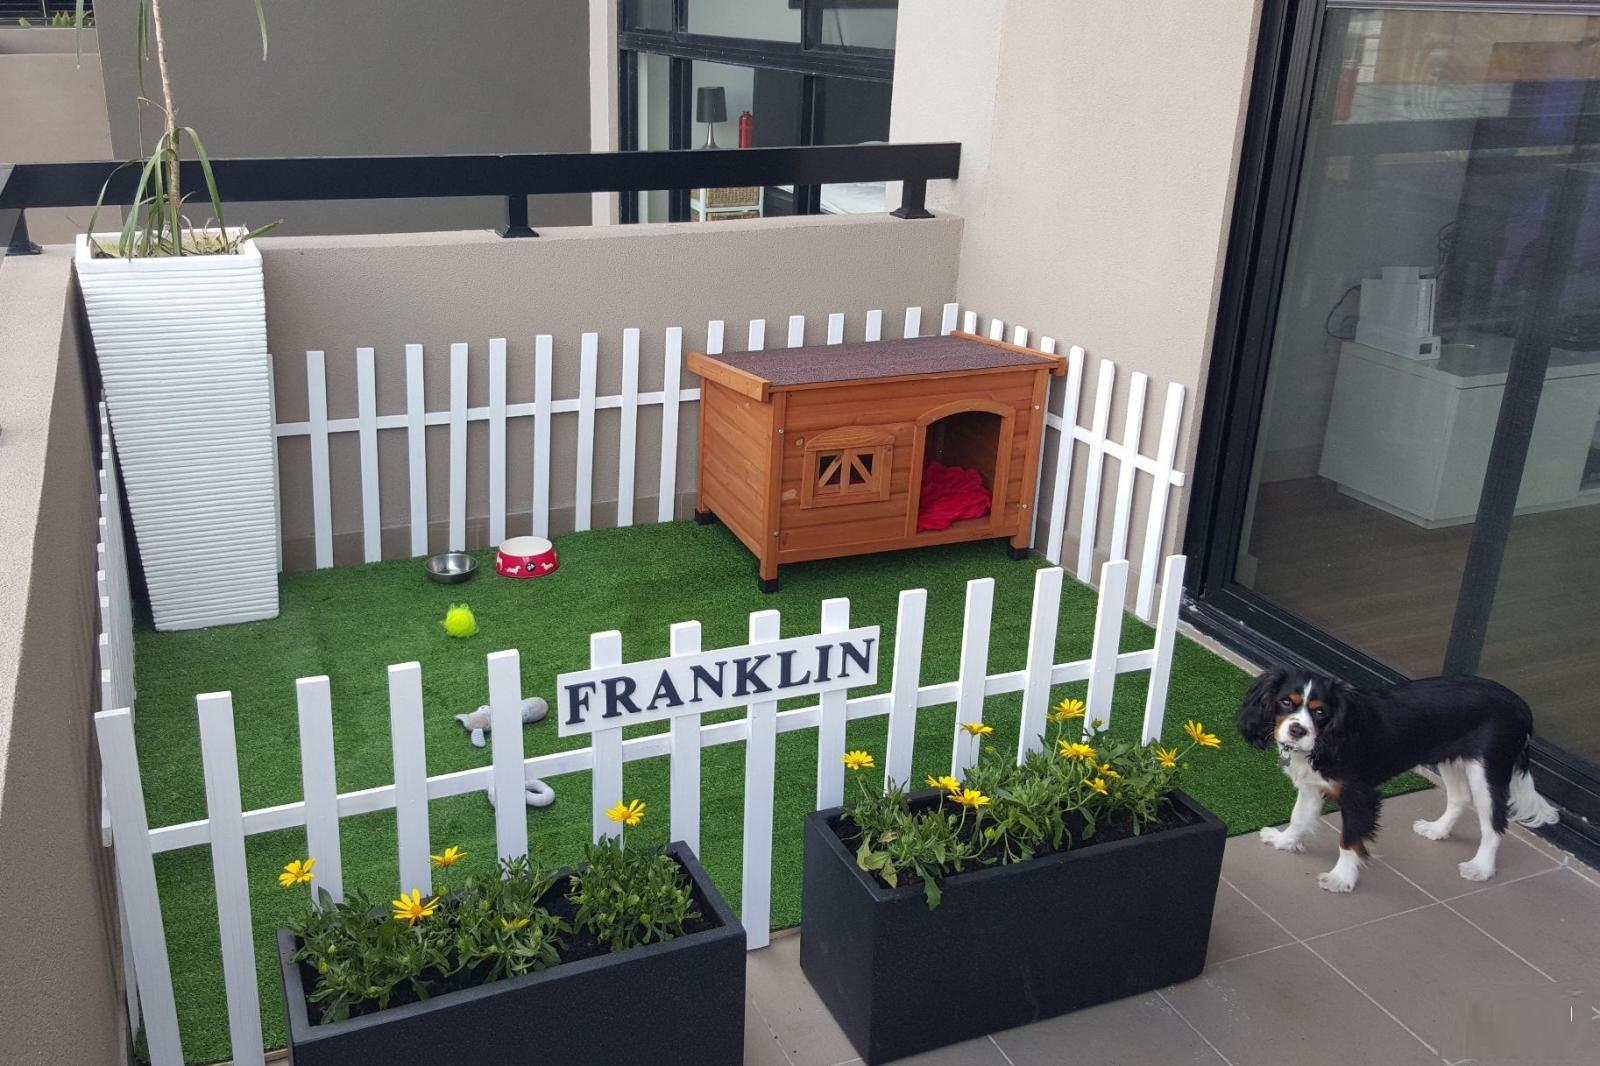 Hình ảnh toàn cảnh nhà cho chó cưng ở ban công với tường rào trắng bao quanh, lát thảm cỏ nhân tạo, nhà gỗ nhỏ, cạnh đó là chú chó nhỏ màu đen